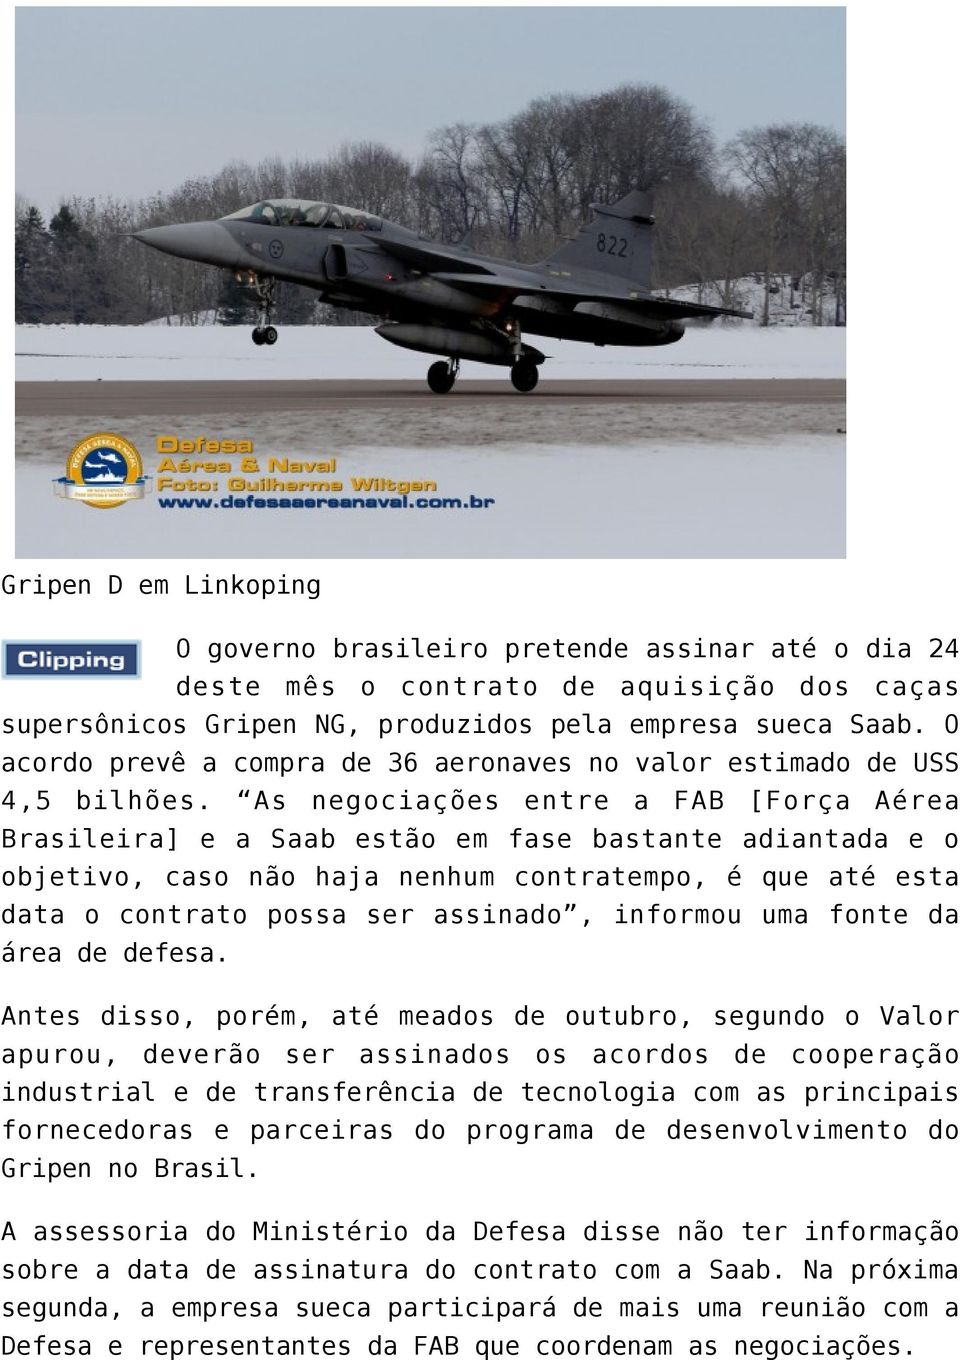 As negociações entre a FAB [Força Aérea Brasileira] e a Saab estão em fase bastante adiantada e o objetivo, caso não haja nenhum contratempo, é que até esta data o contrato possa ser assinado,